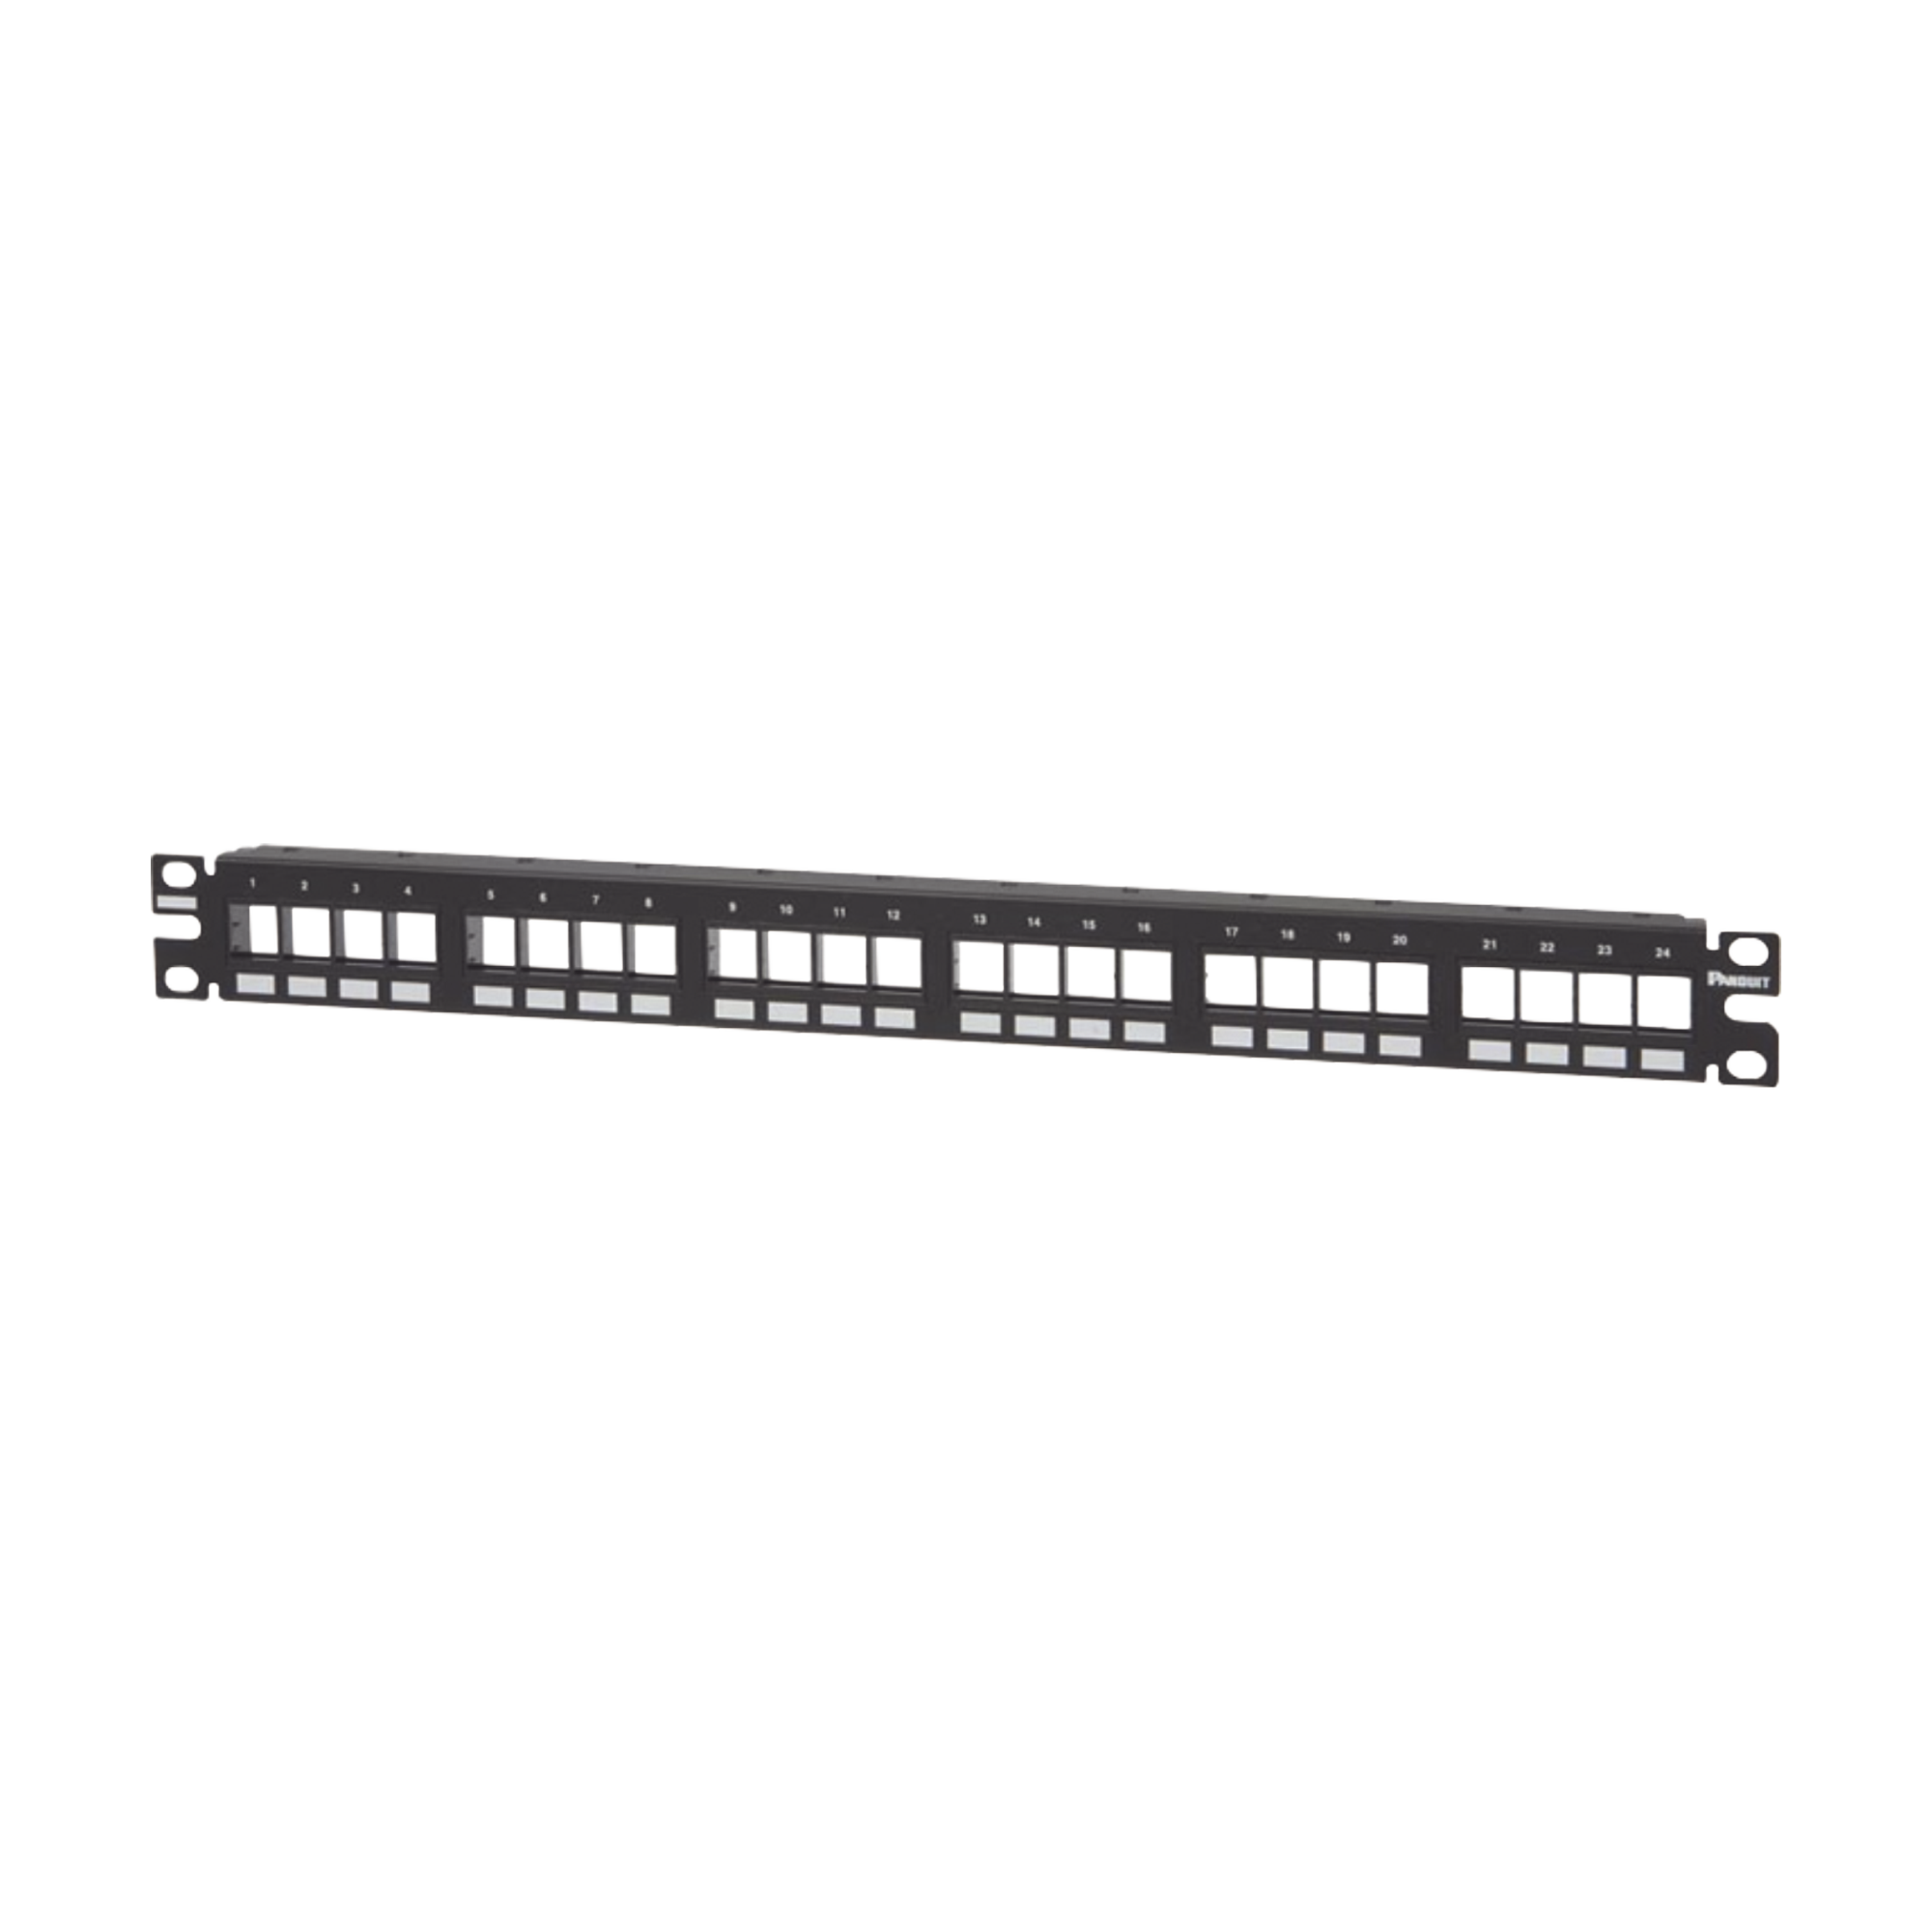 Panel de Parcheo Modular Keystone (Sin Conectores), Numerado y Espacio para Etiquetas, de 24 puertos, 1UR